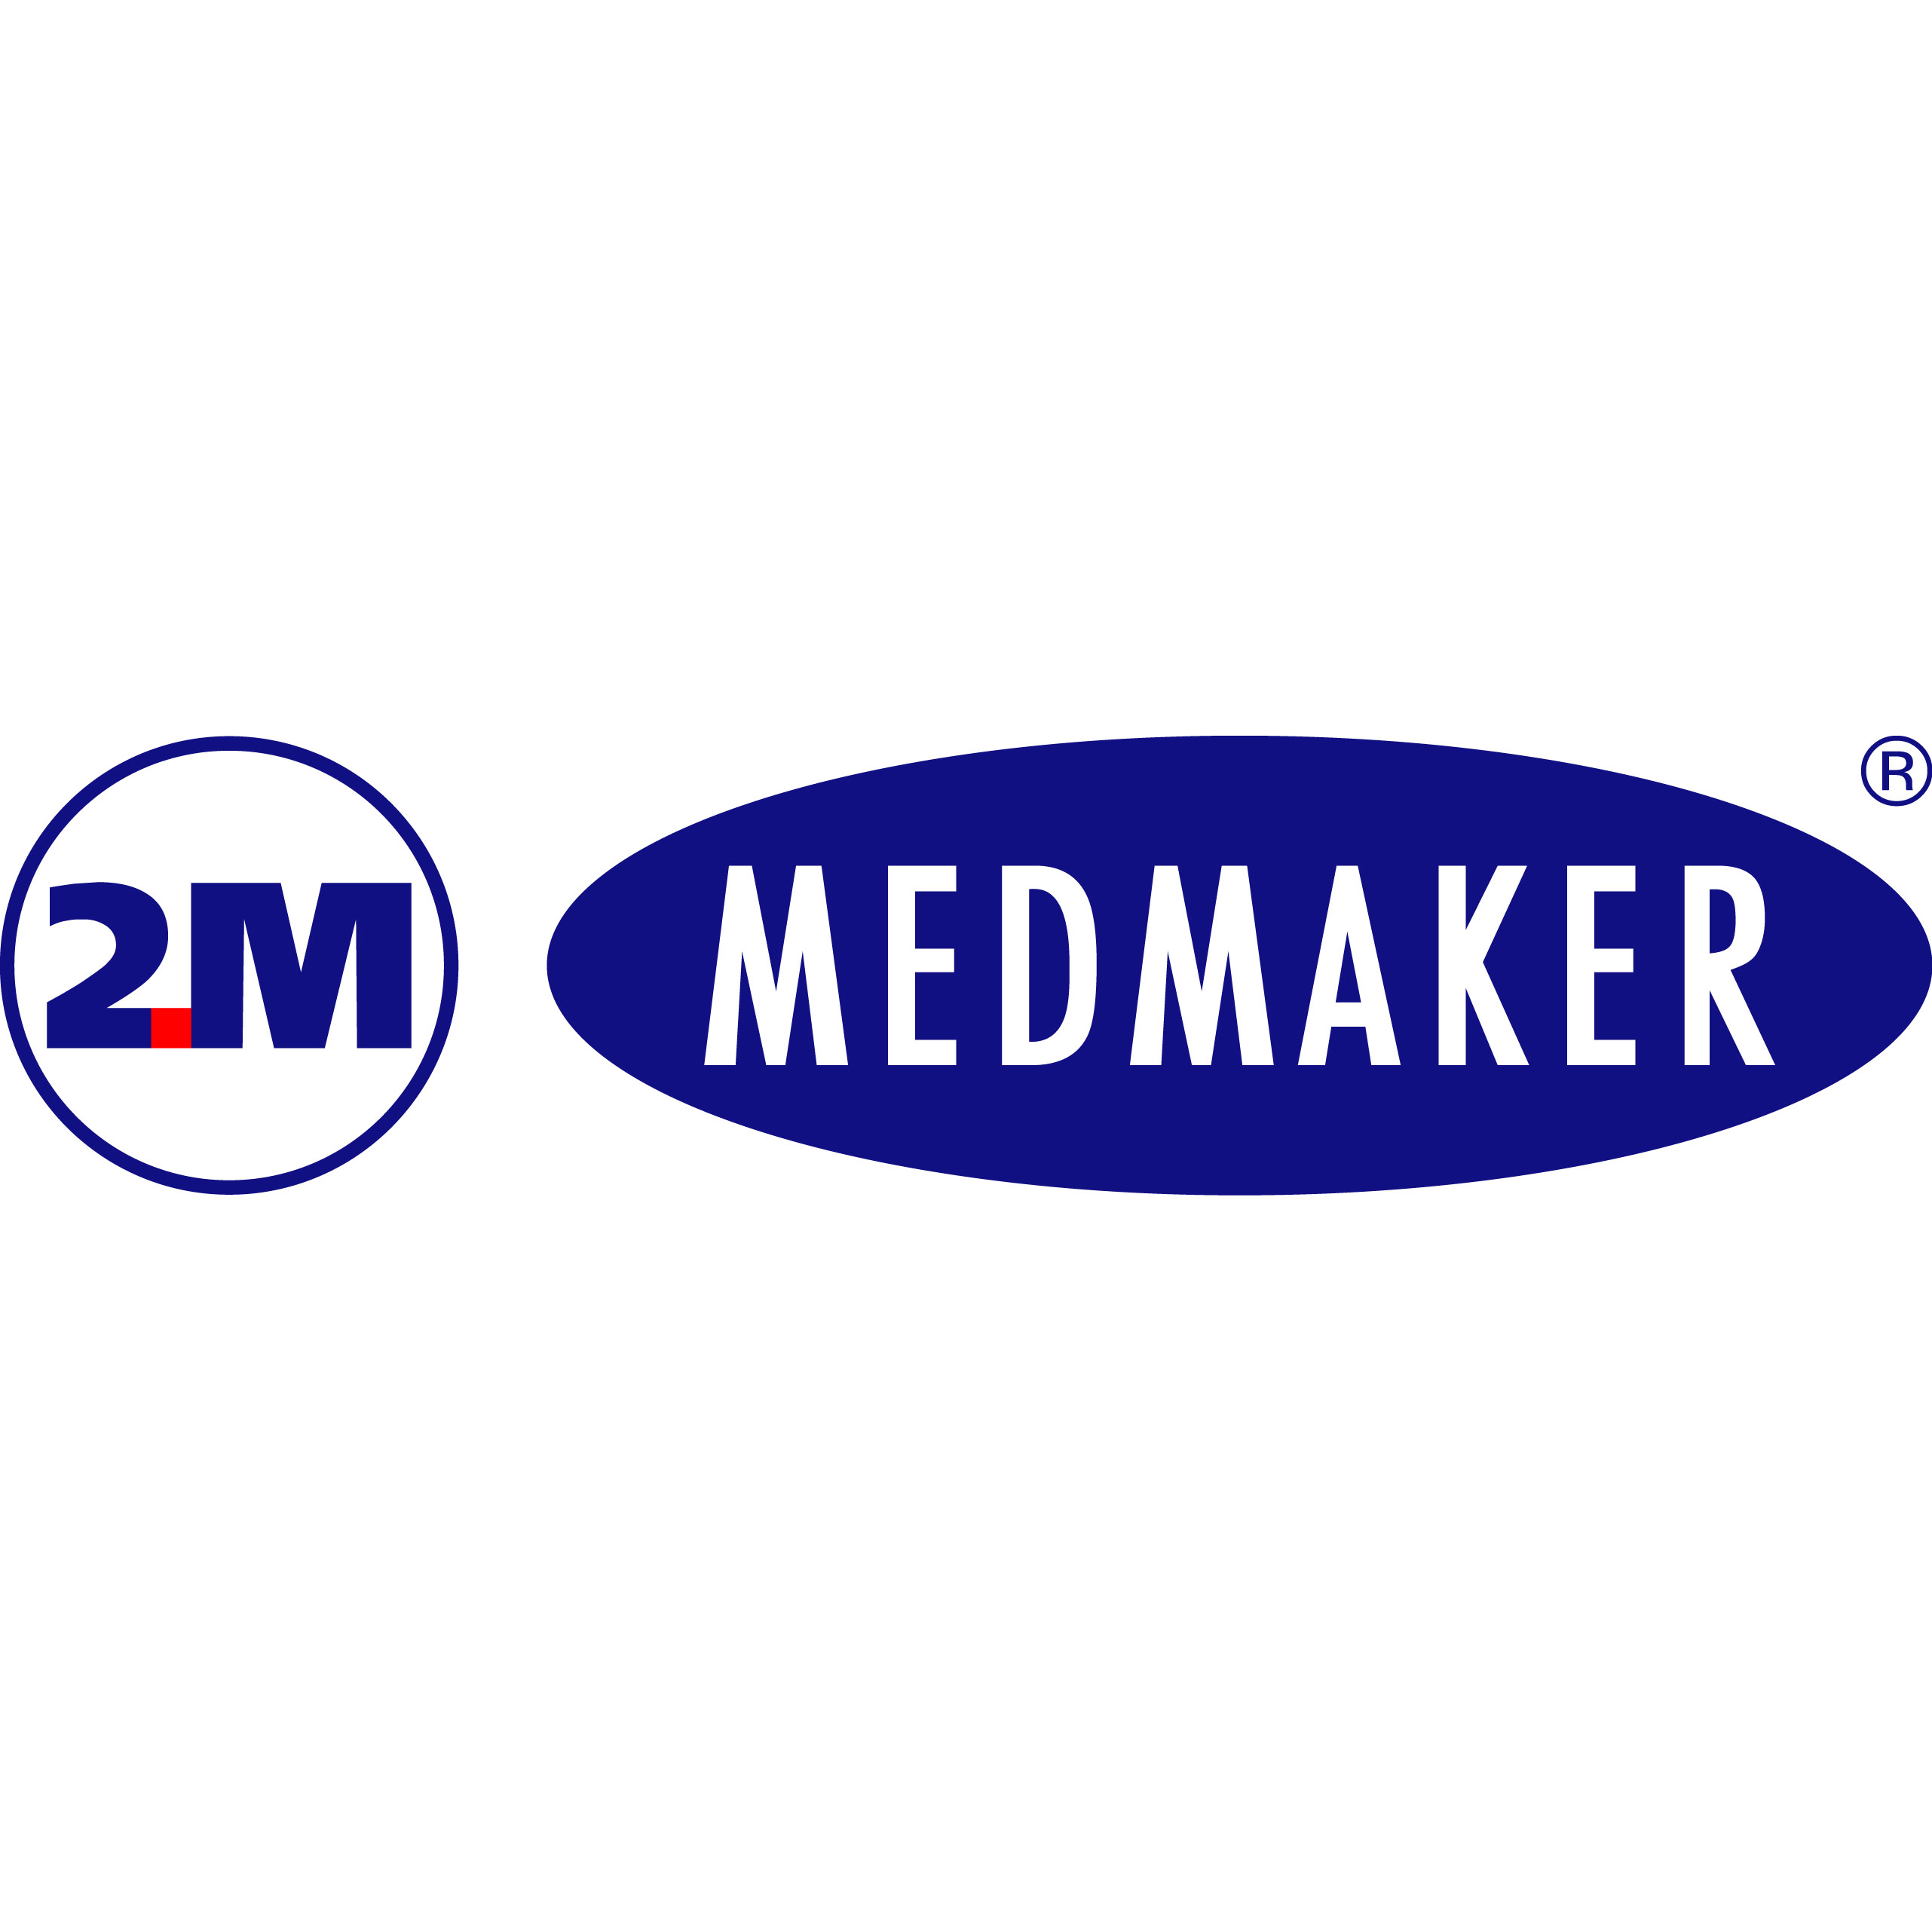 บริษัท 2เอ็ม(เมด-เมเกอร์) จำกัด logo โลโก้